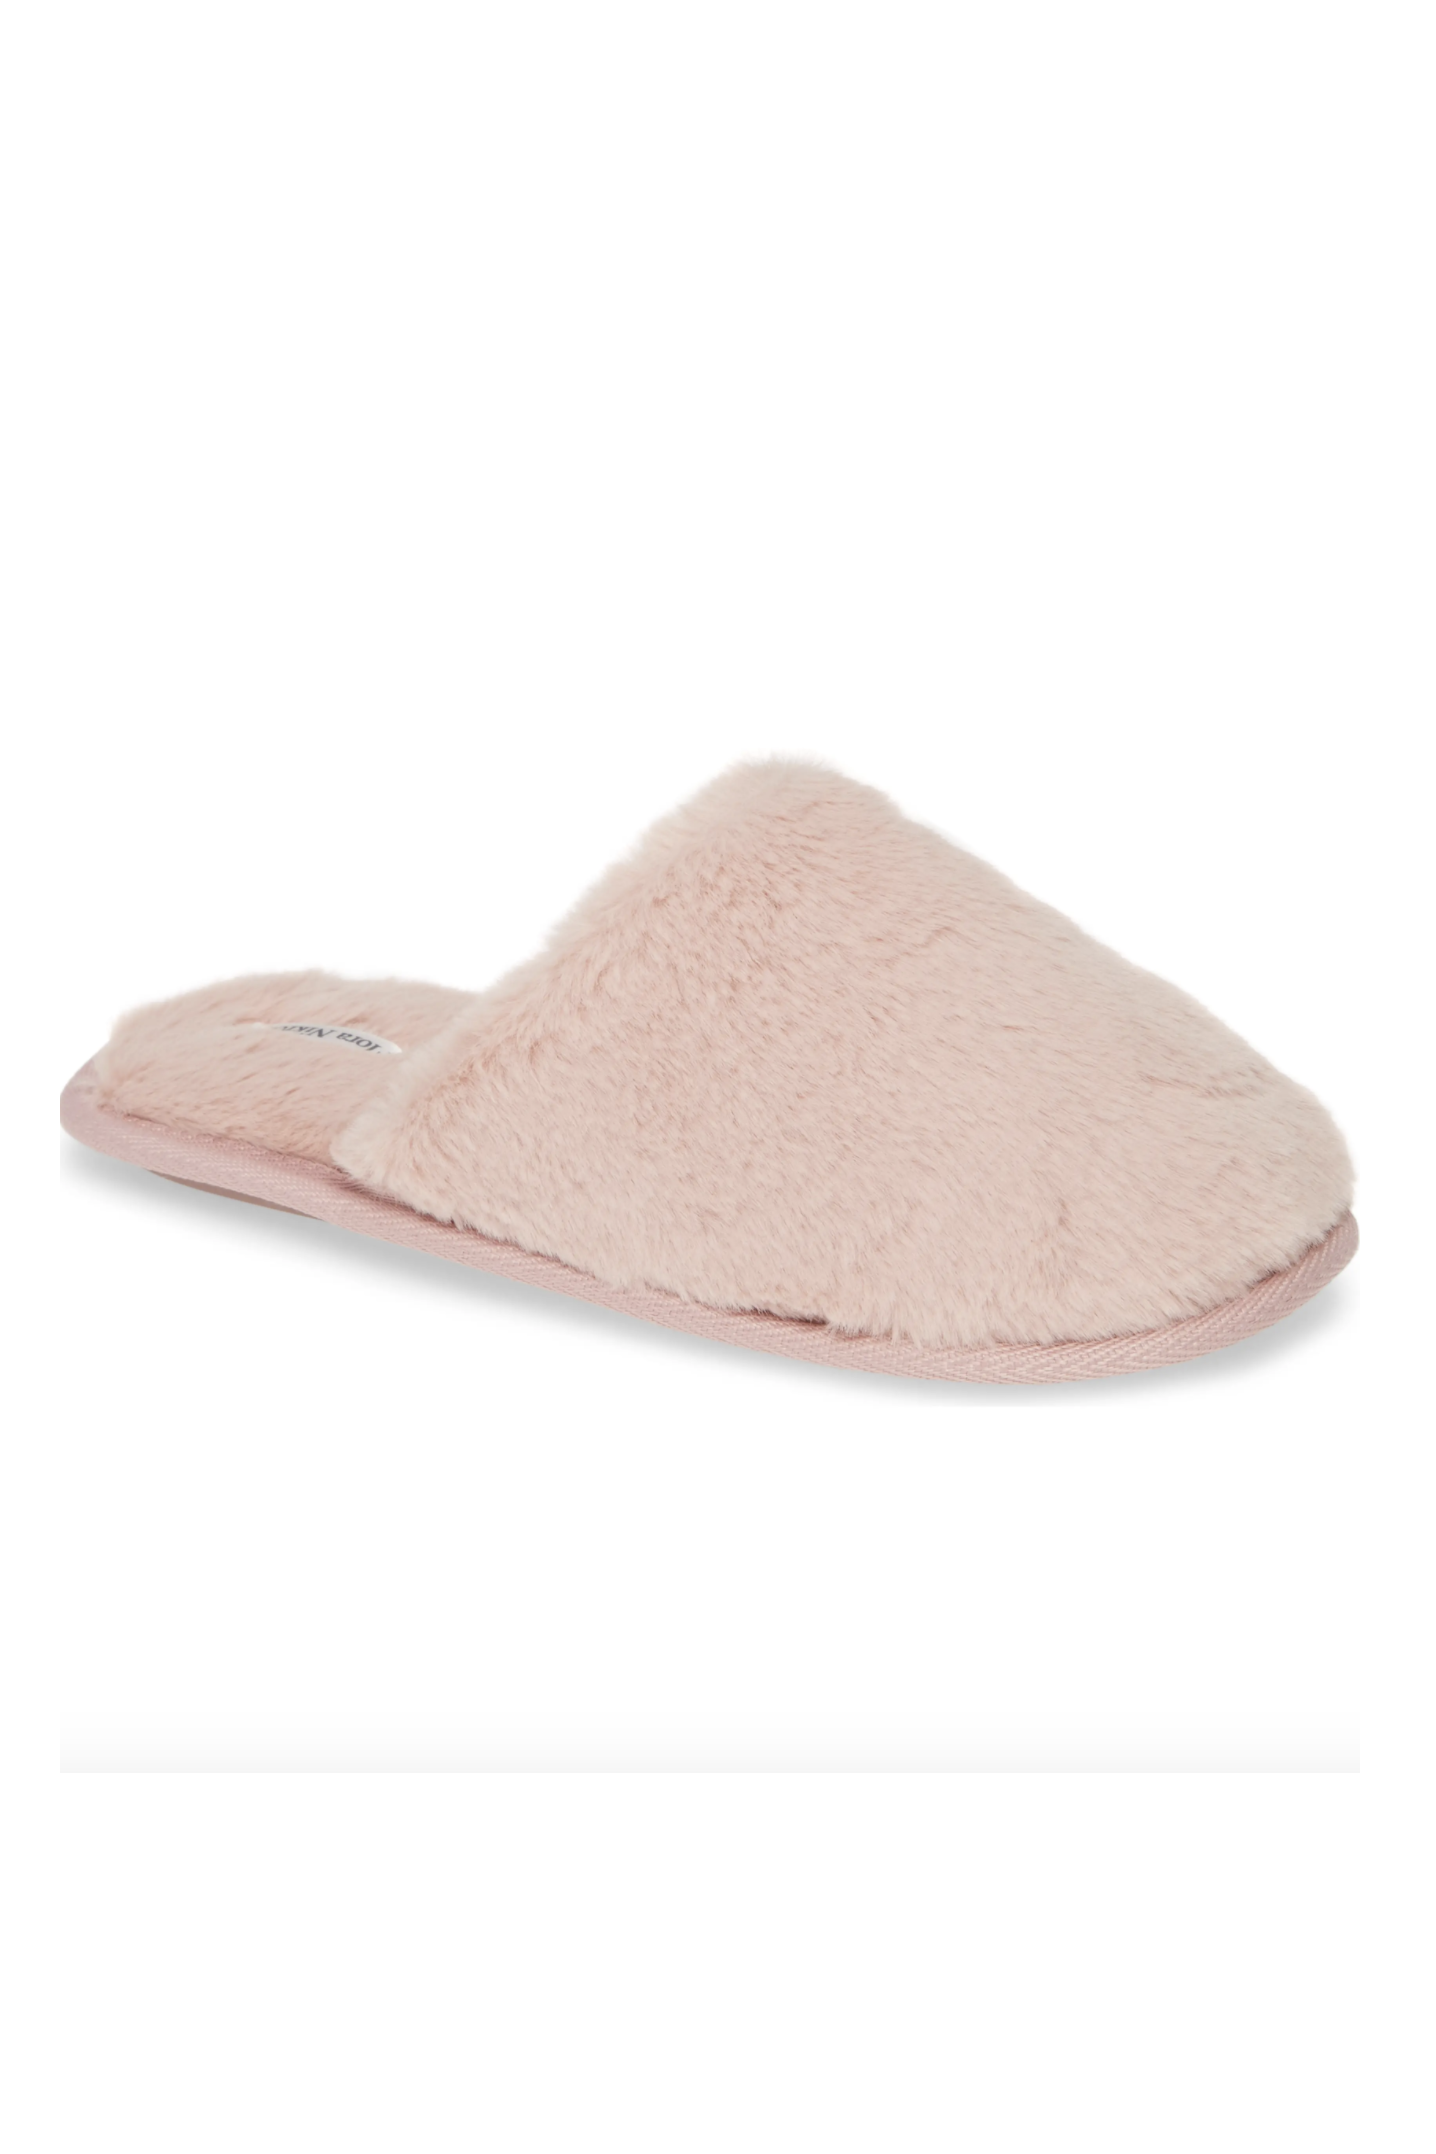 room slippers for women